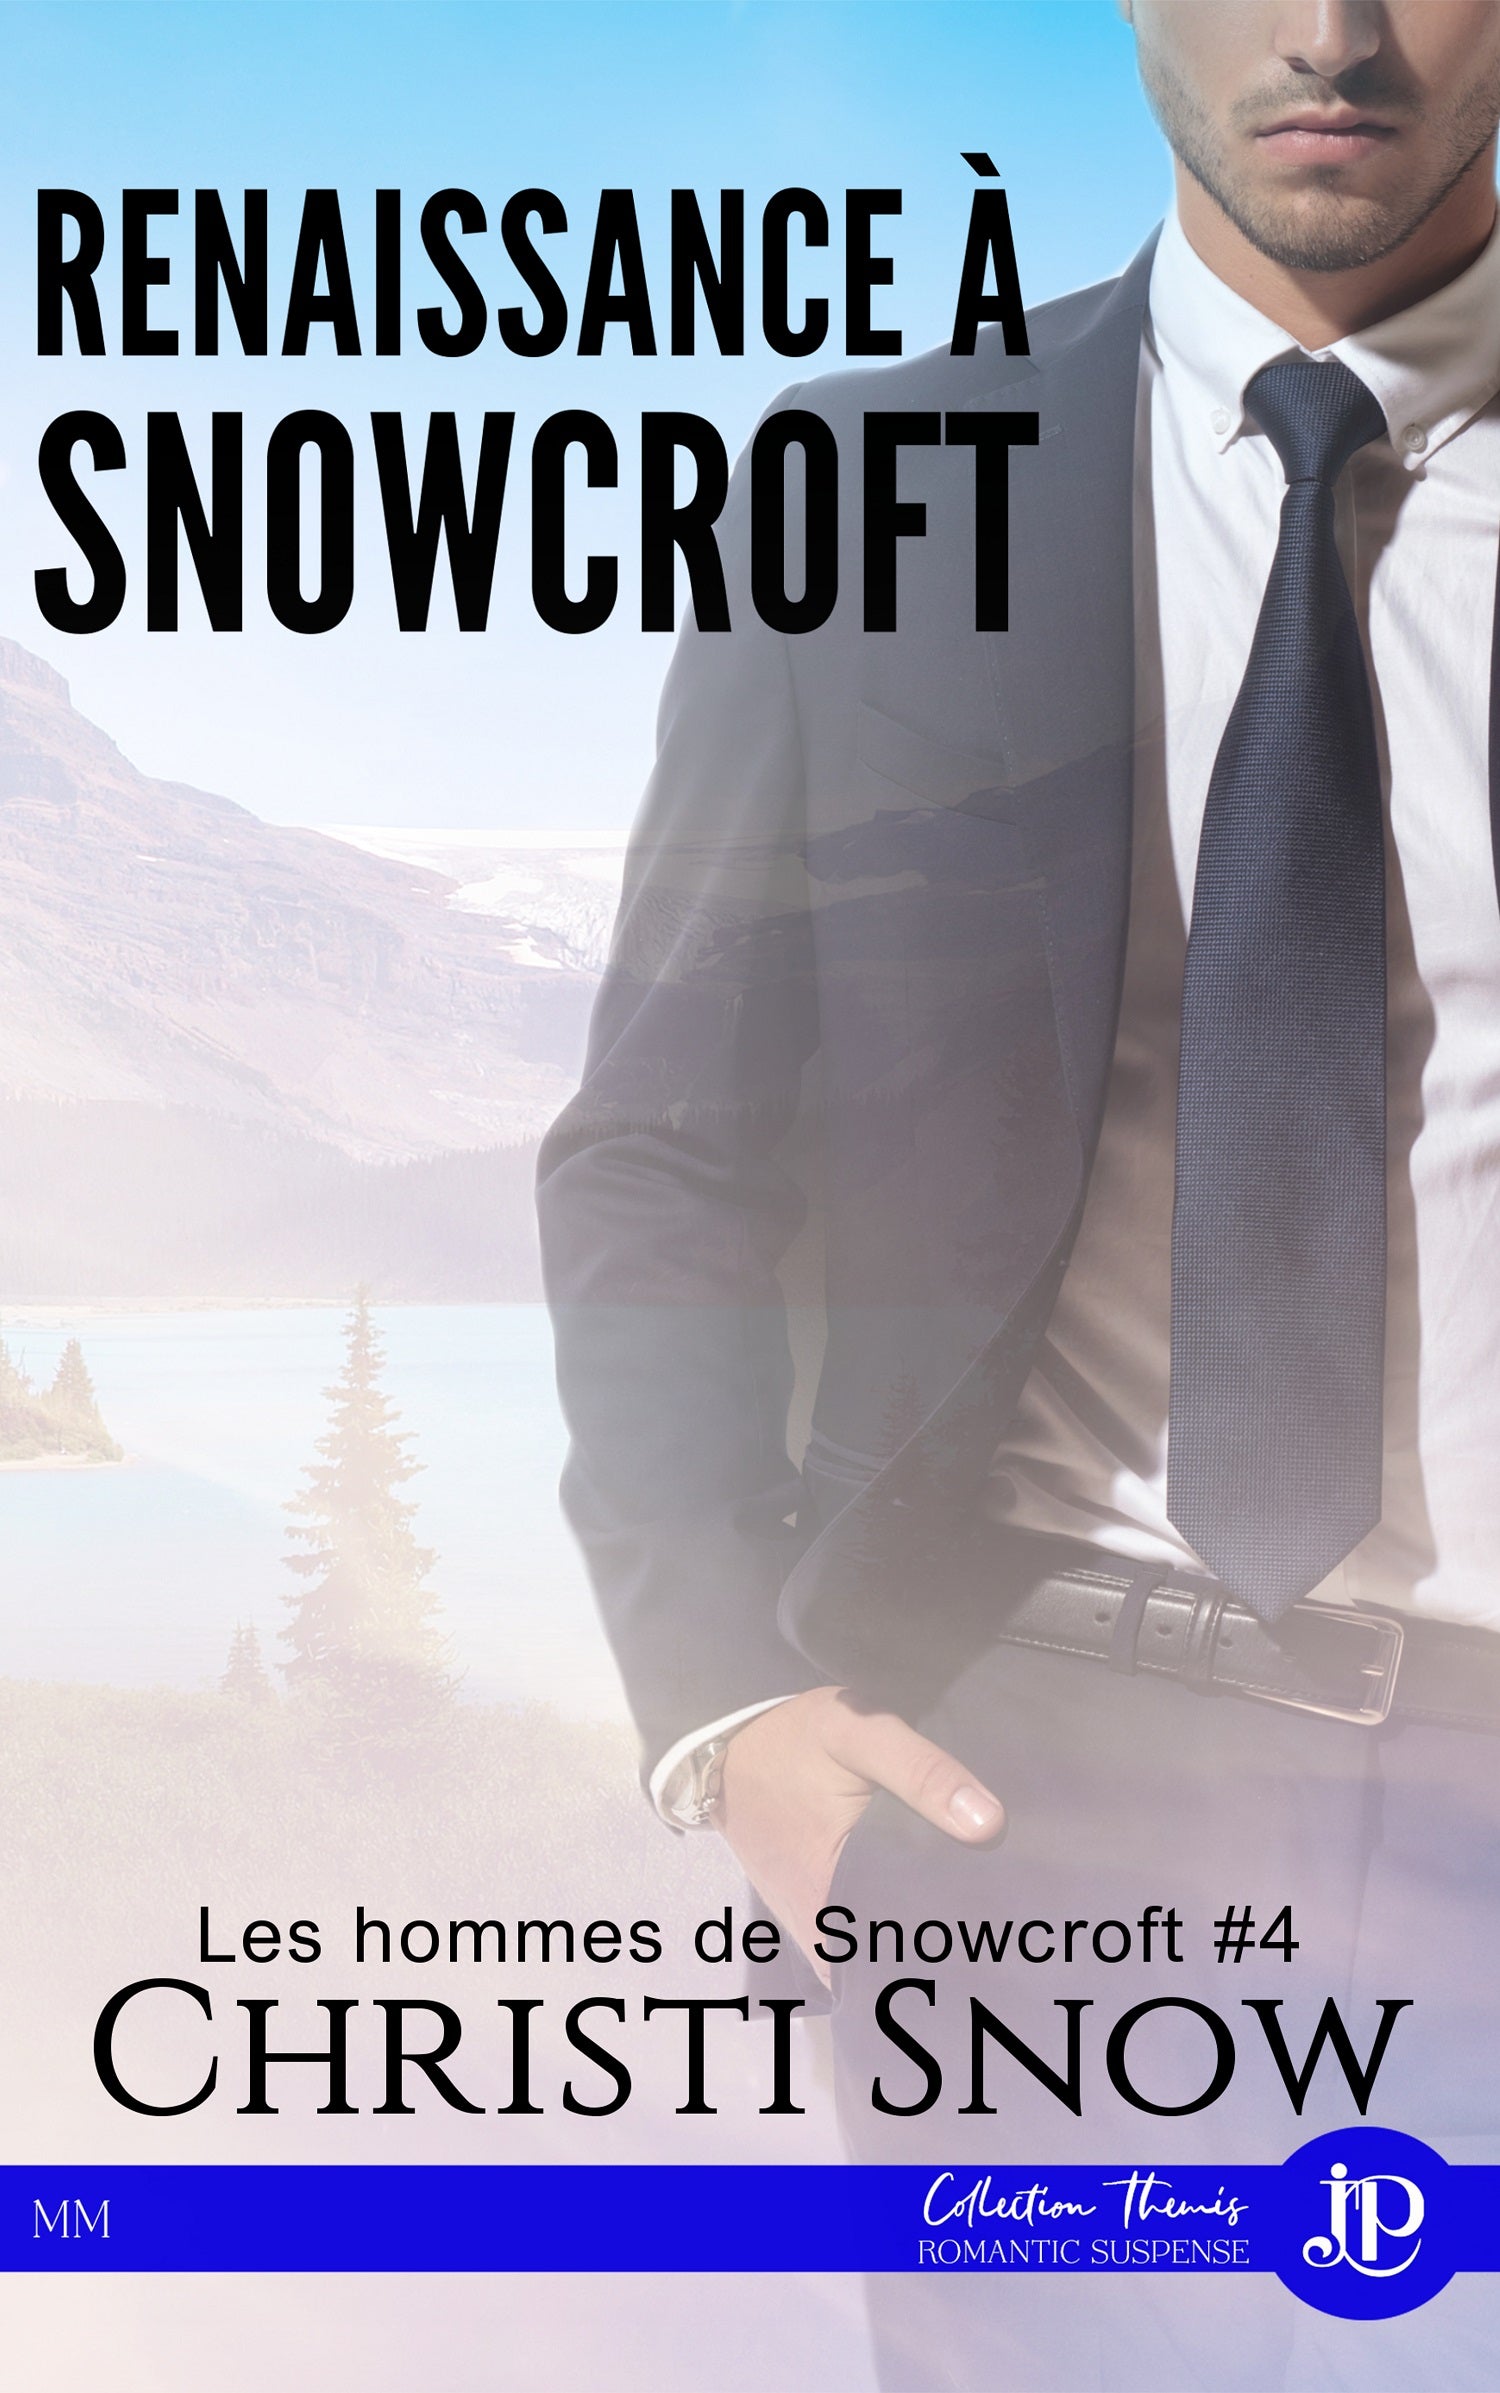 Snowcroft #4 - Renaissance